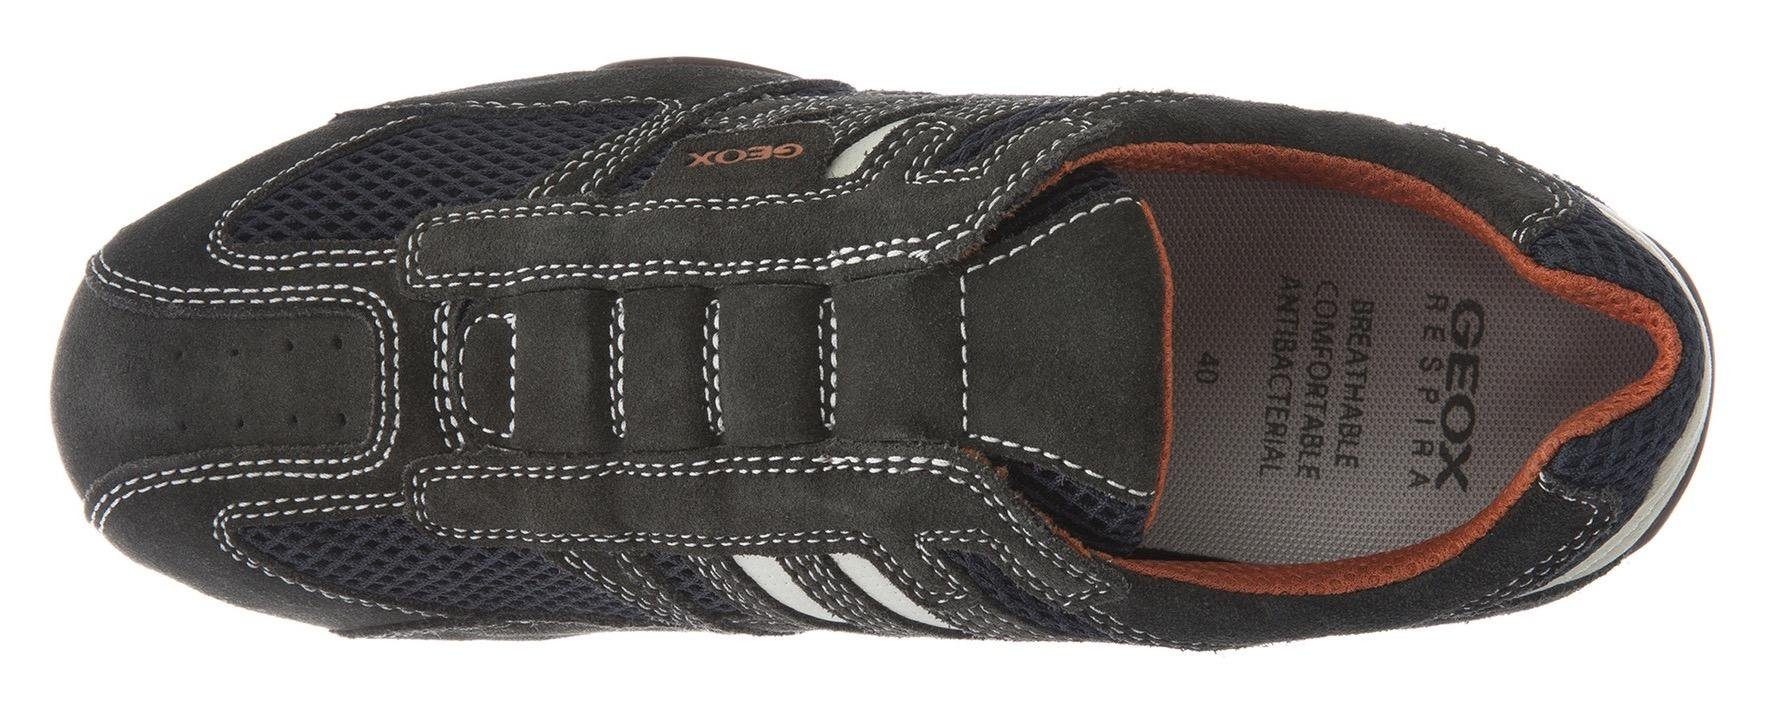 Geox UOMO SNAKE Slip-On Sneaker und Spezial Ziernähten mit modischen Membrane Geox mit dunkelgrau-beige